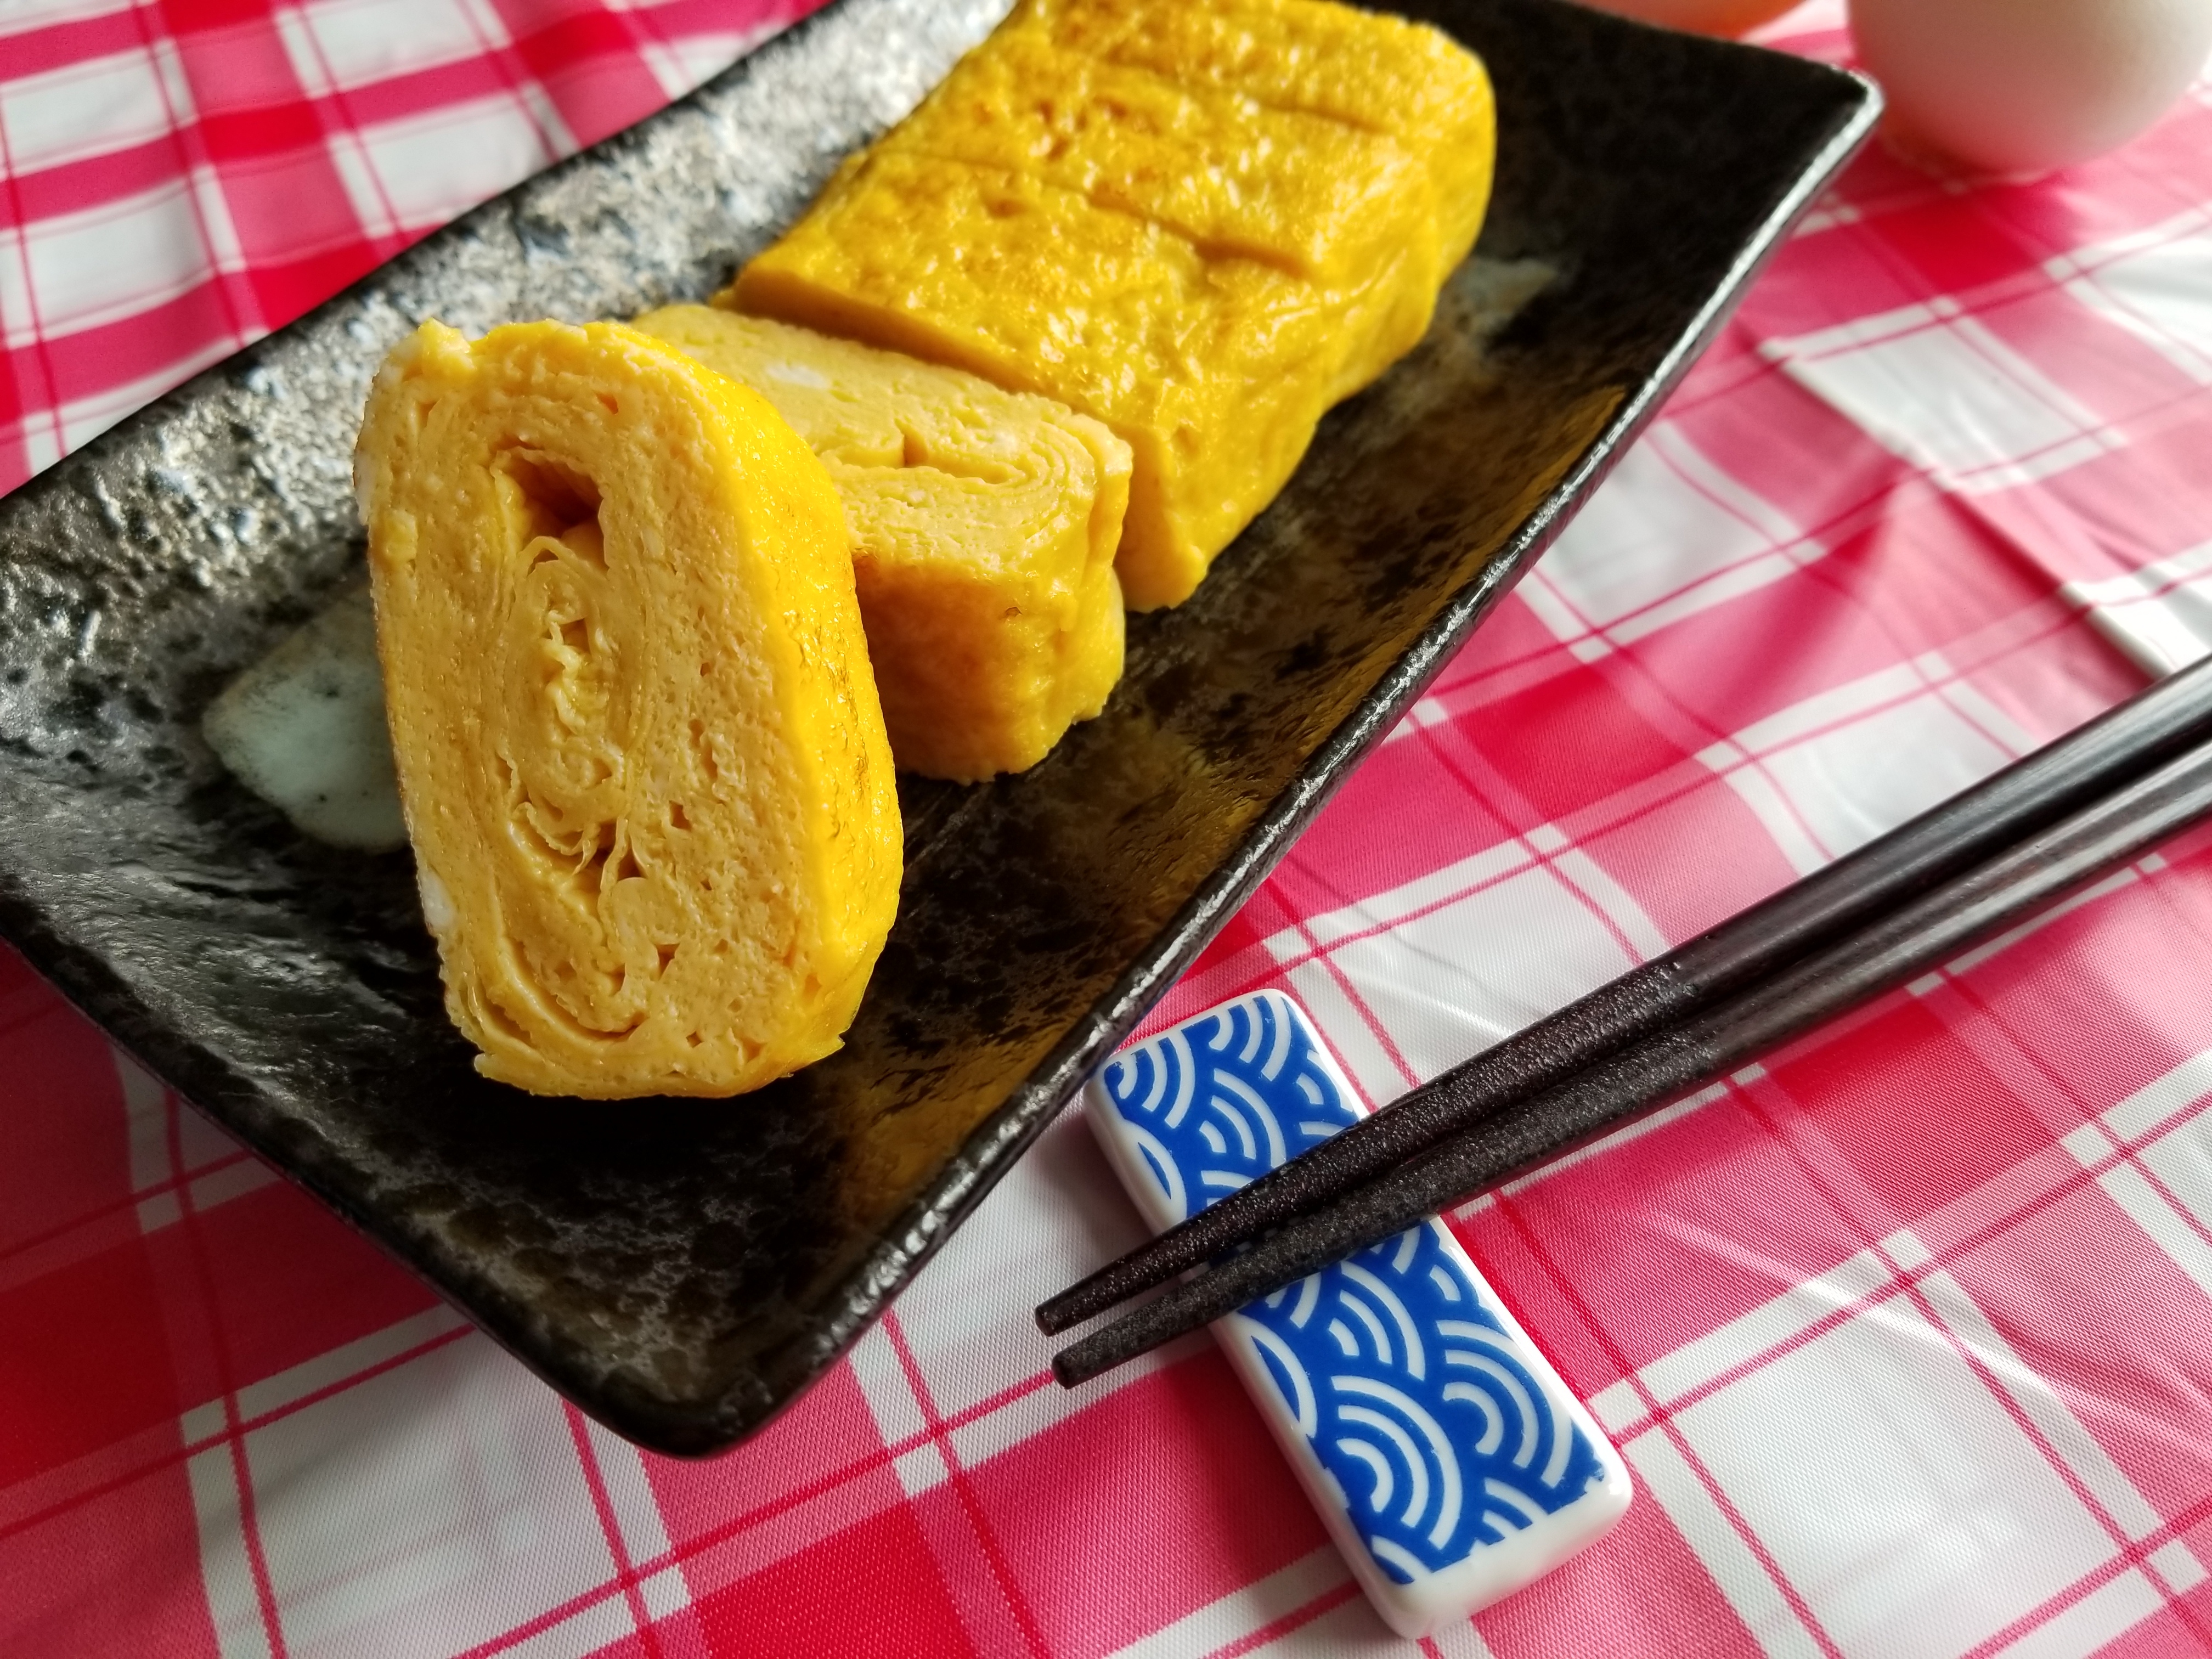 Tamagoyaki (Japanese omelette) 玉子焼き recipe